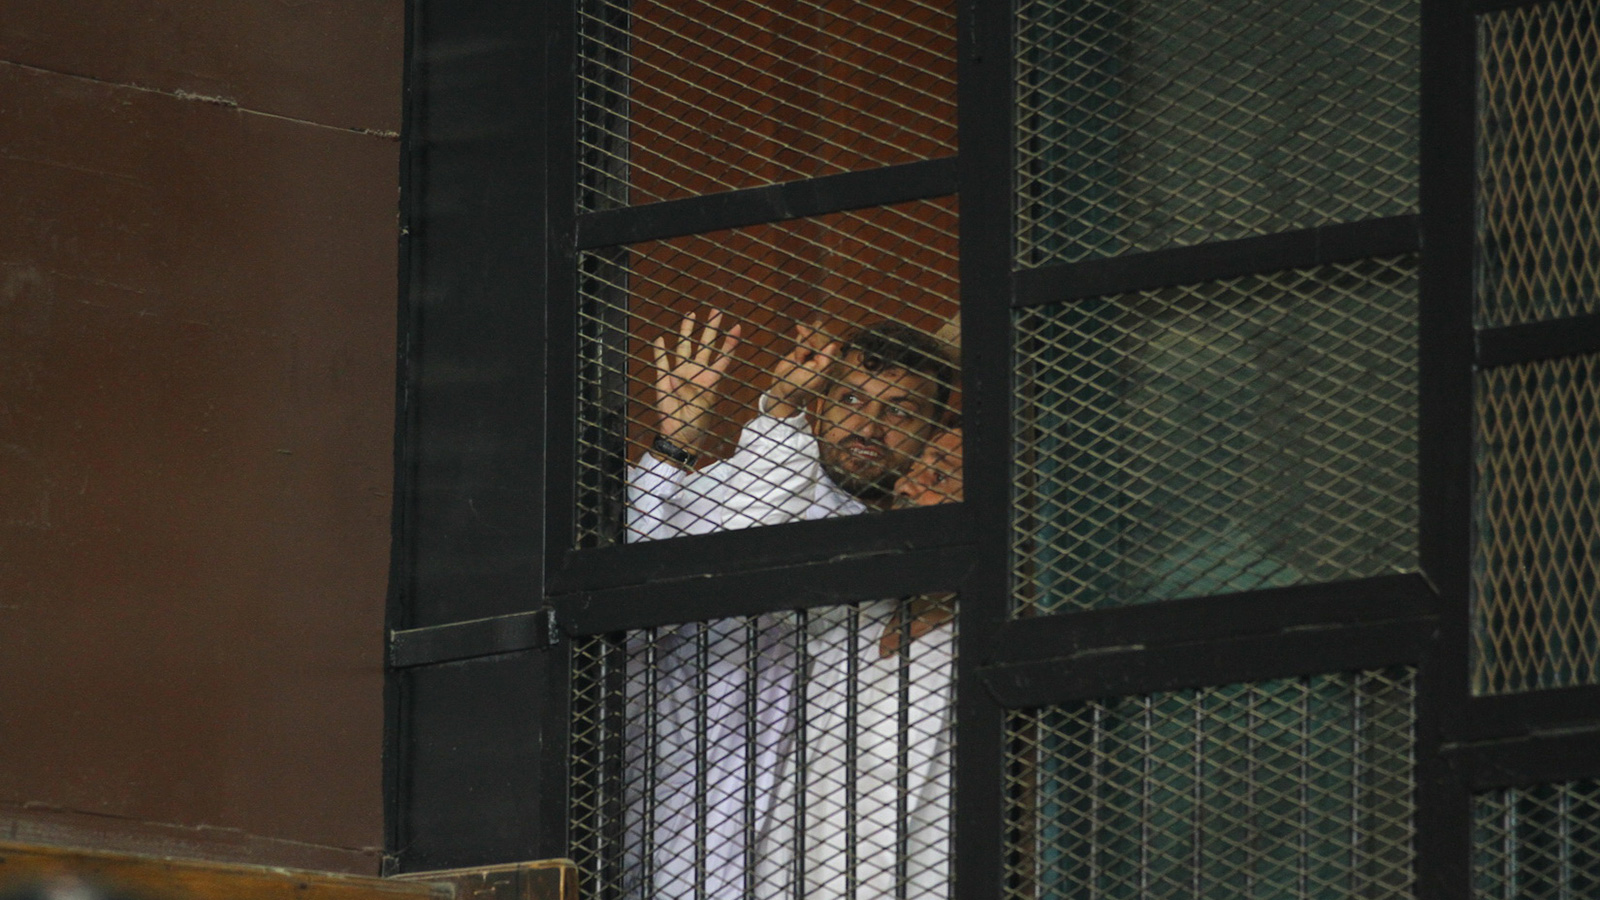 ‪الأوضاع الصحية في السجون المصرية سيئة أصلا (الجزيرة)‬ الأوضاع الصحية في السجون المصرية سيئة أصلا (الجزيرة)